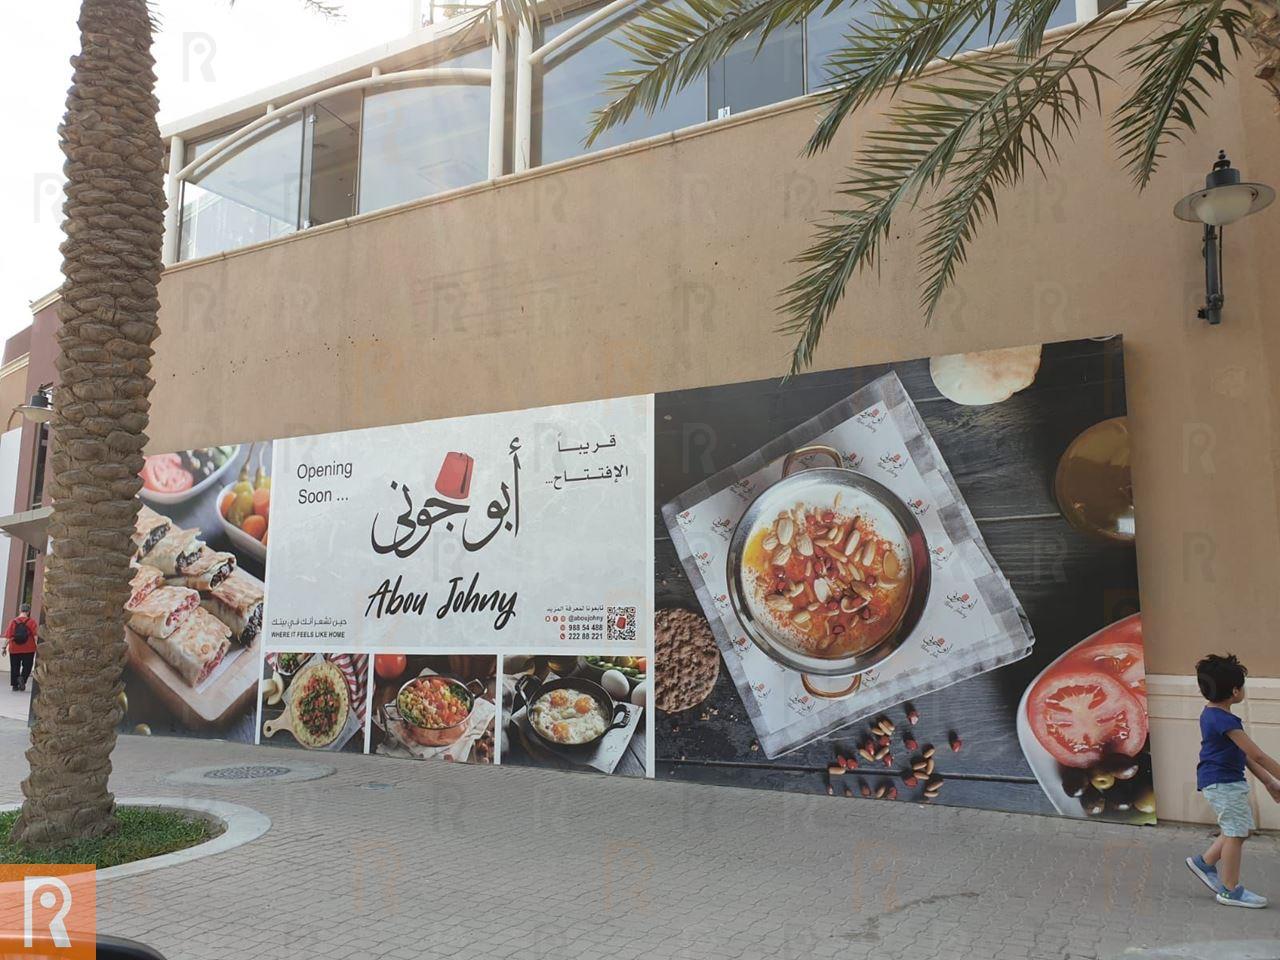 افتتاح مطعم أبو جوني اللبناني قريبا في مارينا كريسنت